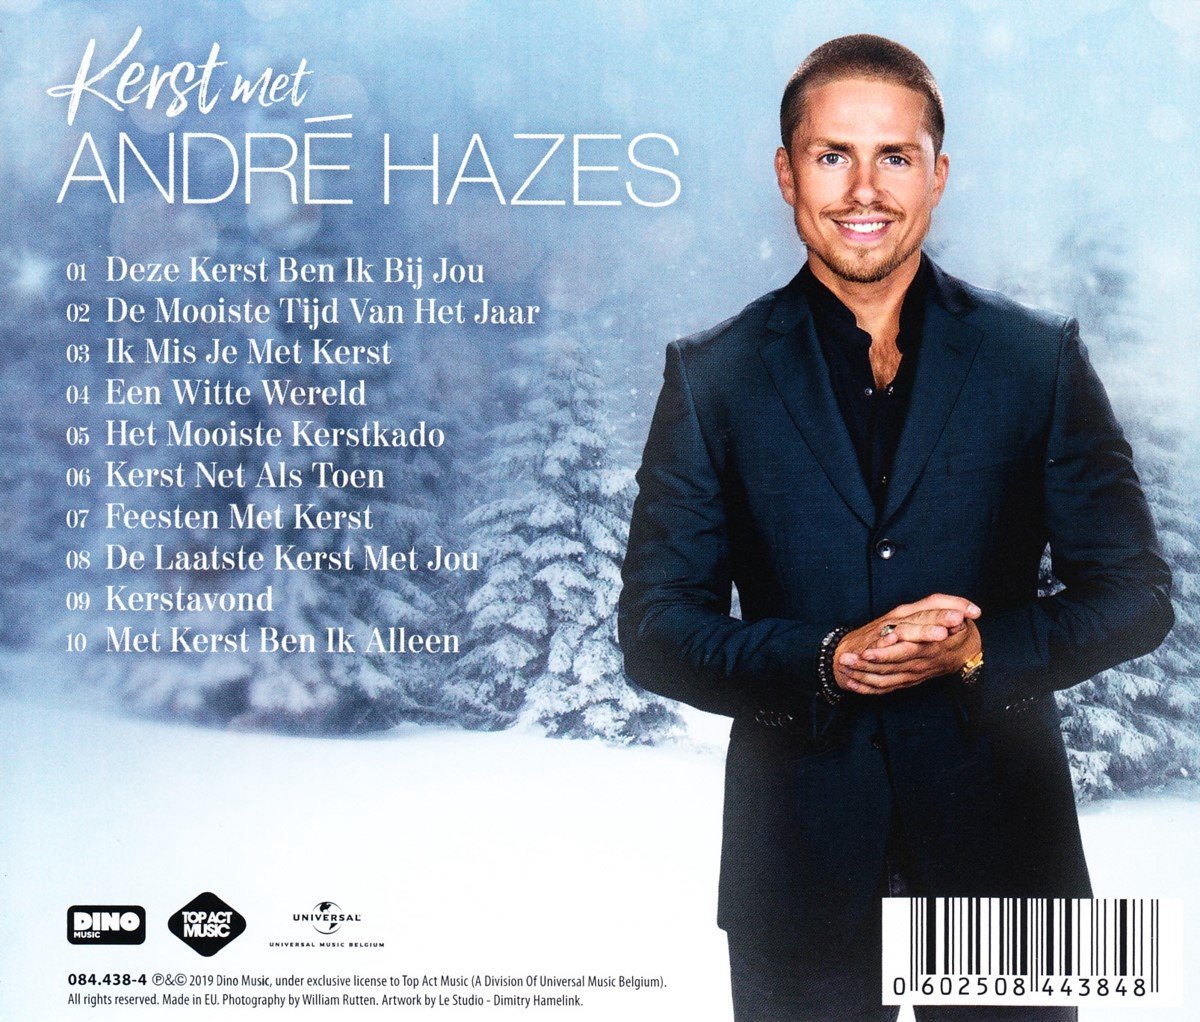 Azijn welvaart explosie Kerst Met André Hazes (CD), André Hazes Jr. | CD (album) | Muziek | bol